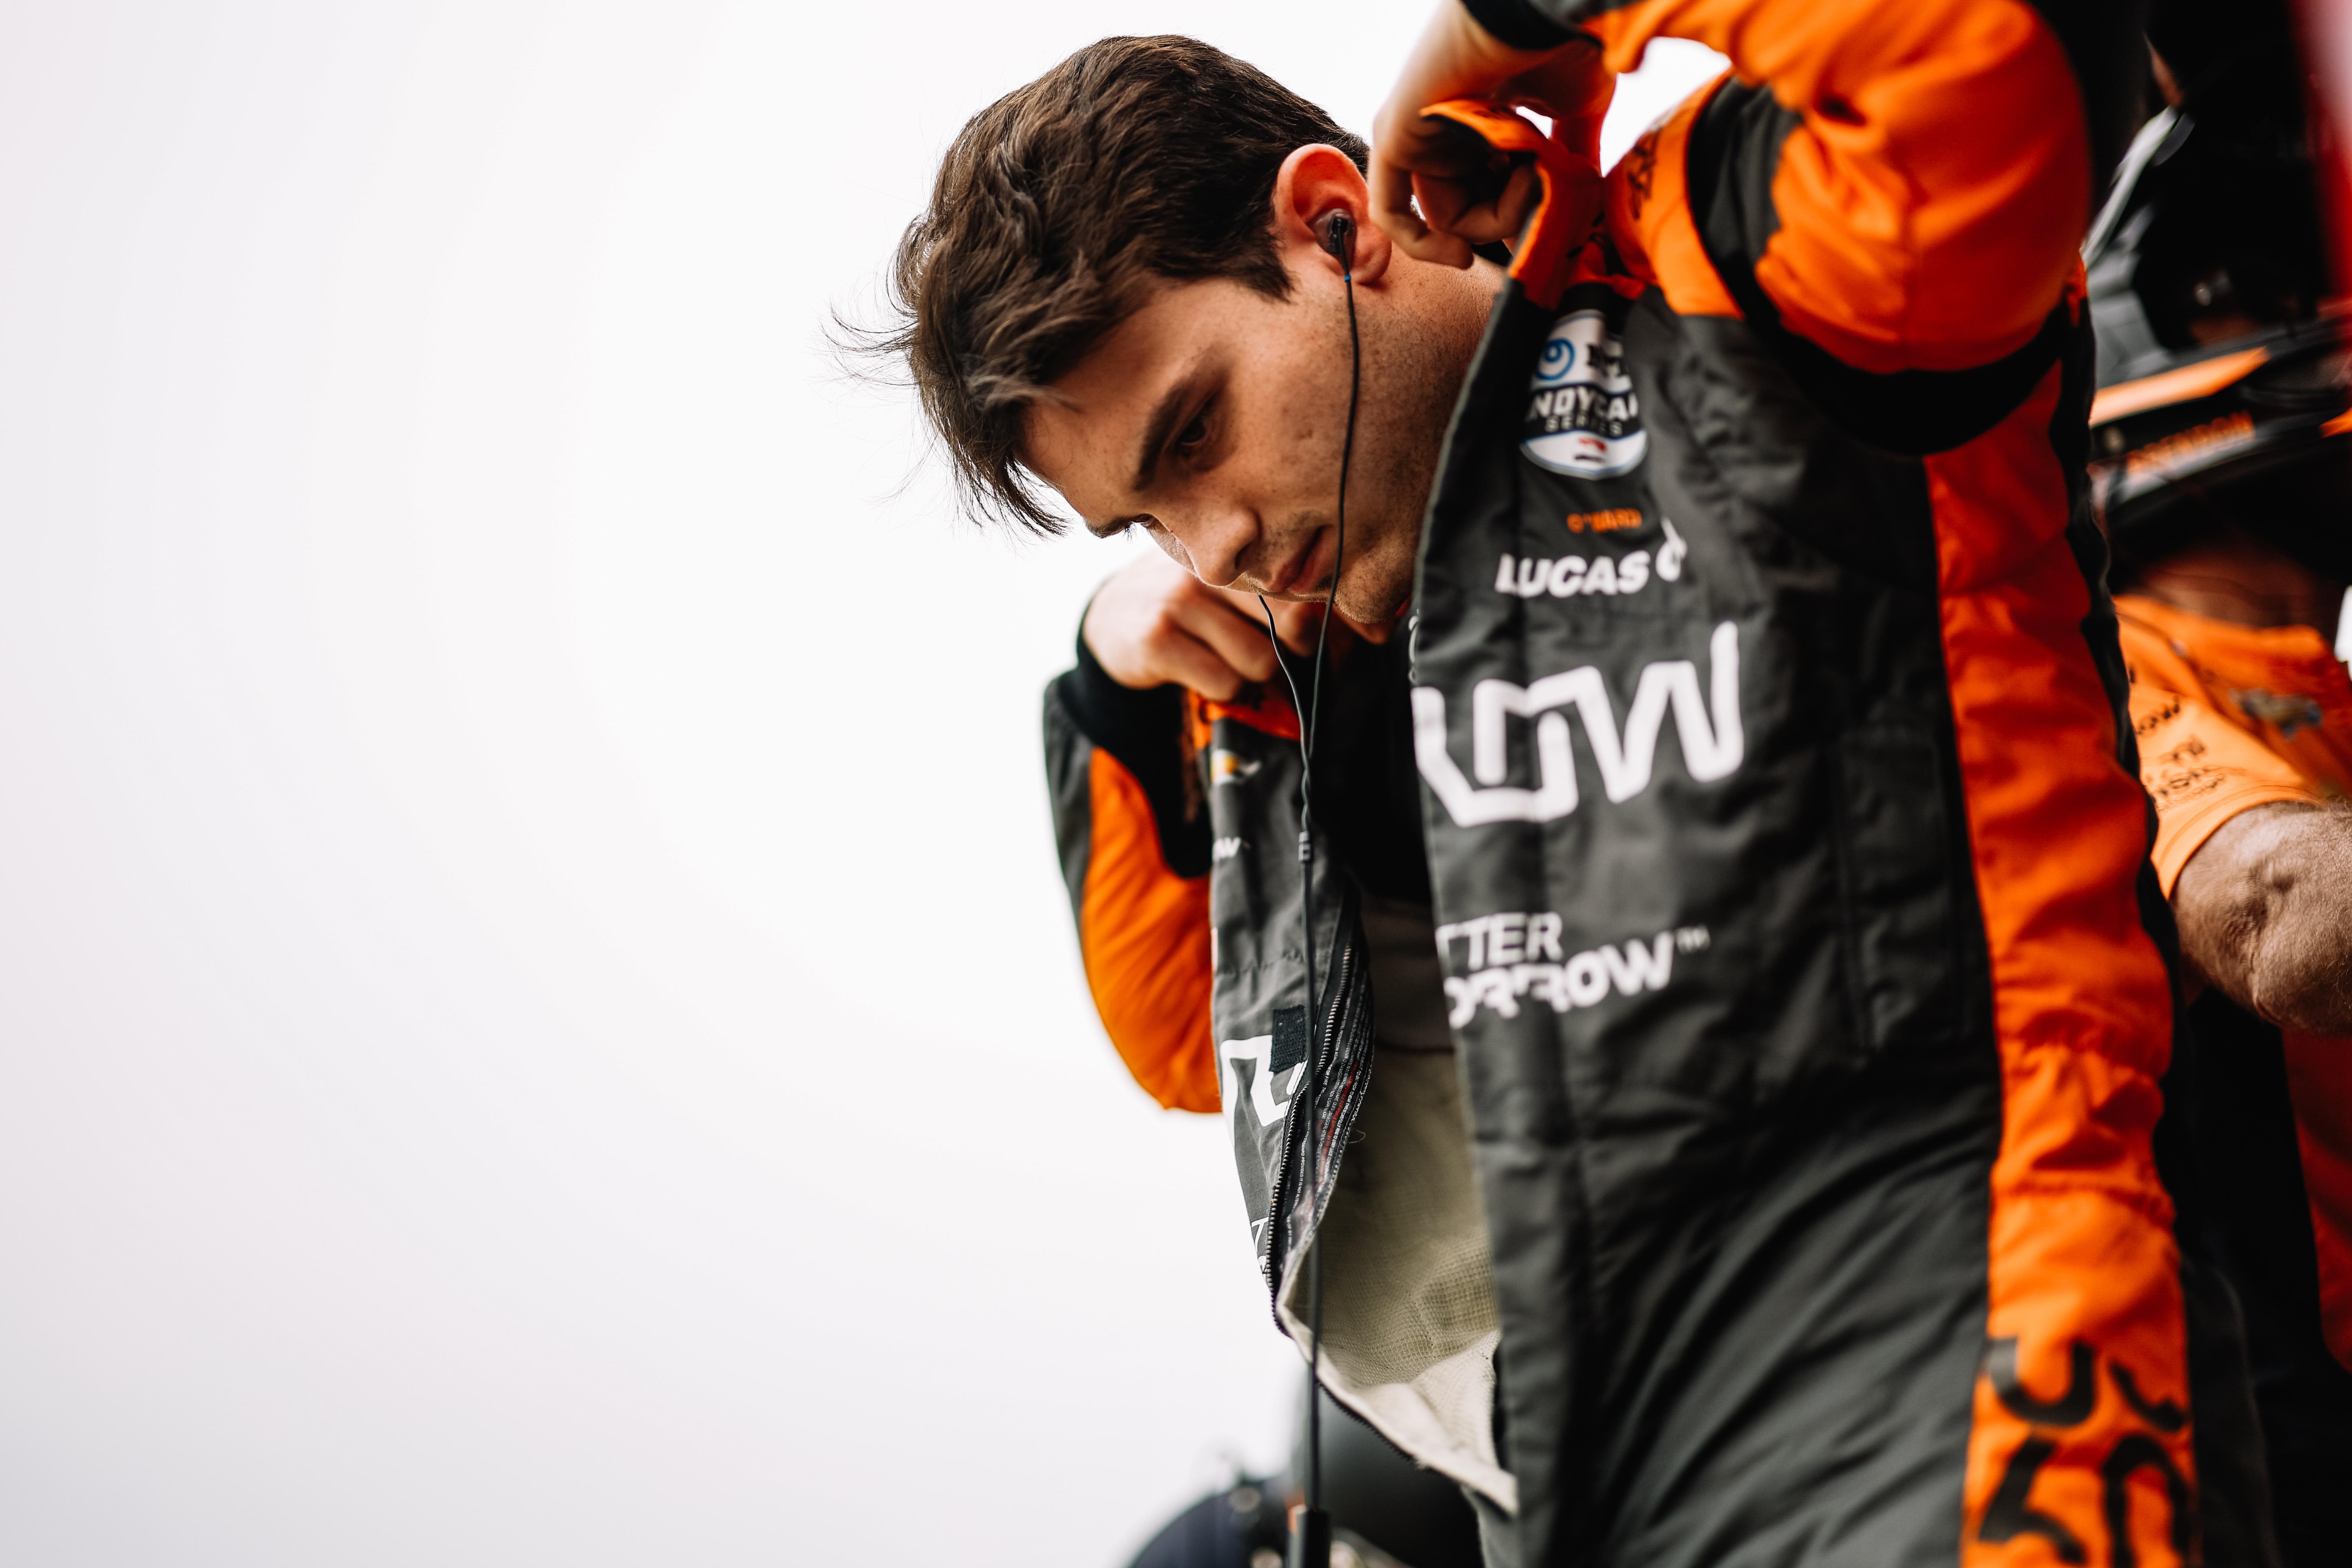 “Még járni is alig tudtam” – Nem Piastri volt az egyetlen McLaren-pilóta, aki betegen versenyzett a hétvégén